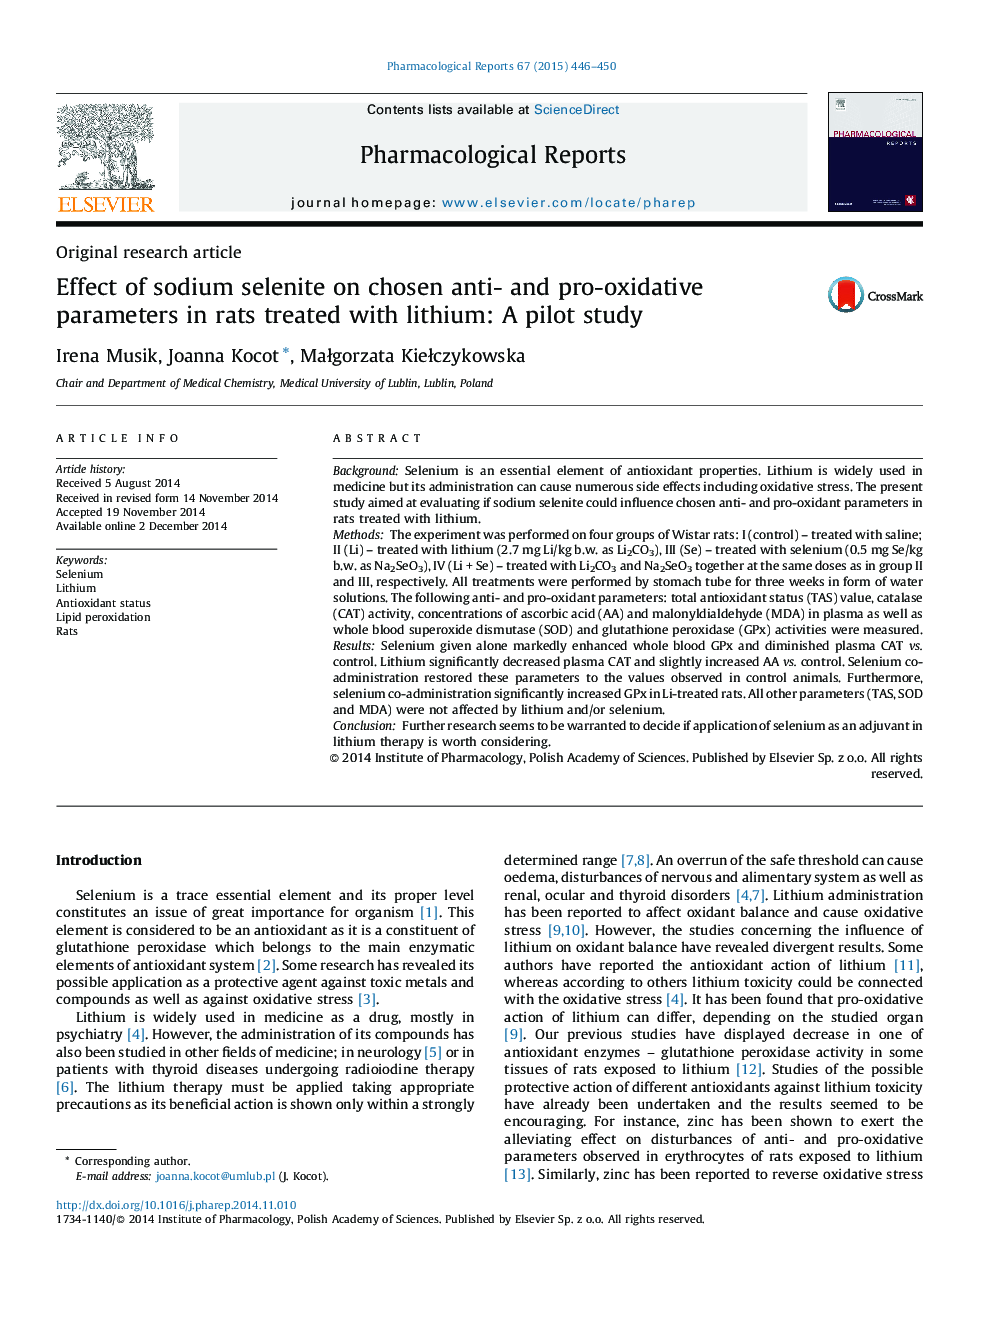 اثر سلنیت سدیم بر پارامترهای ضد و اکسیداتیو انتخابی در موش های صحرایی با لیتیوم: یک مطالعه آزمایشی 